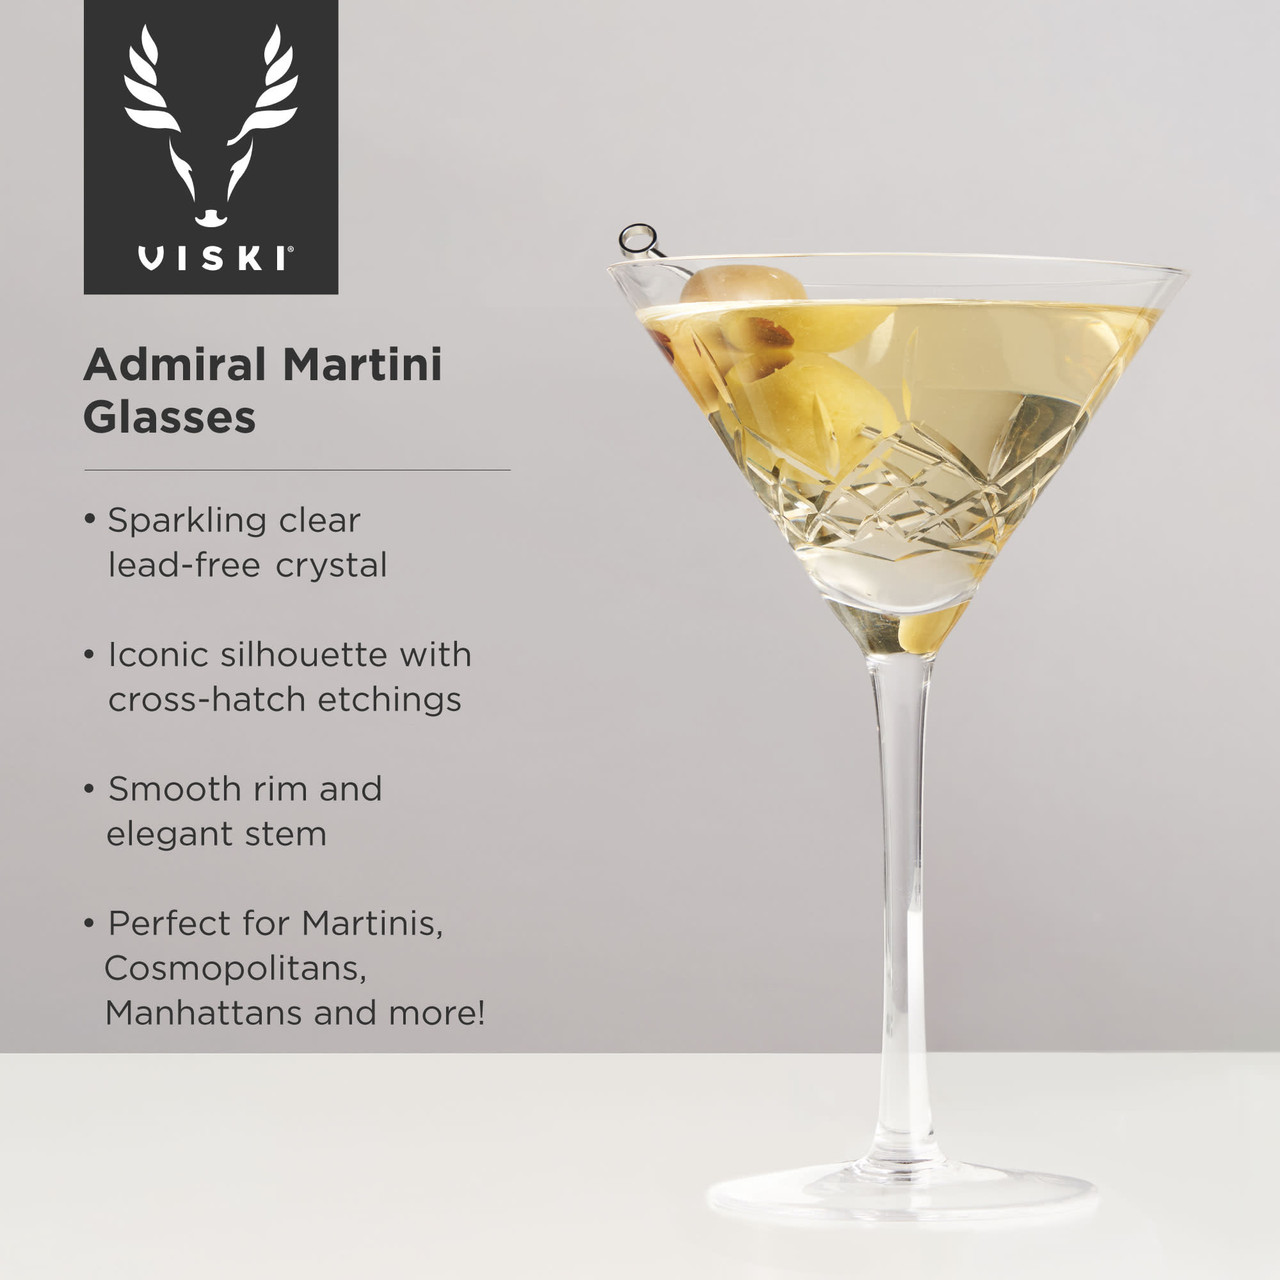 Admiral Martini Glasses by Viski